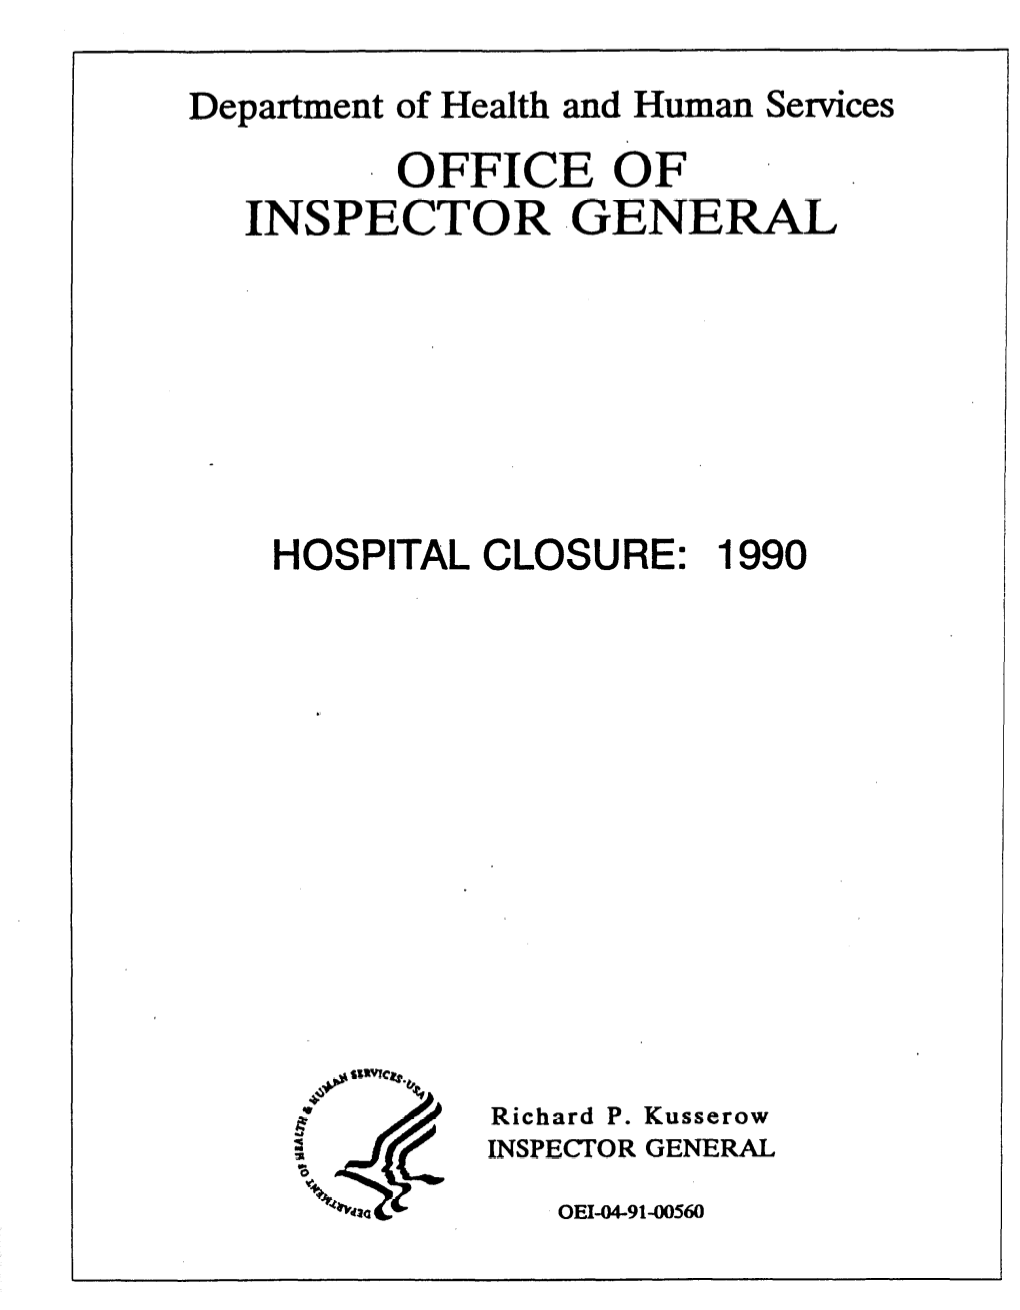 Hospital Closure: 1990 (OEI-04-91-00560; 1/92)